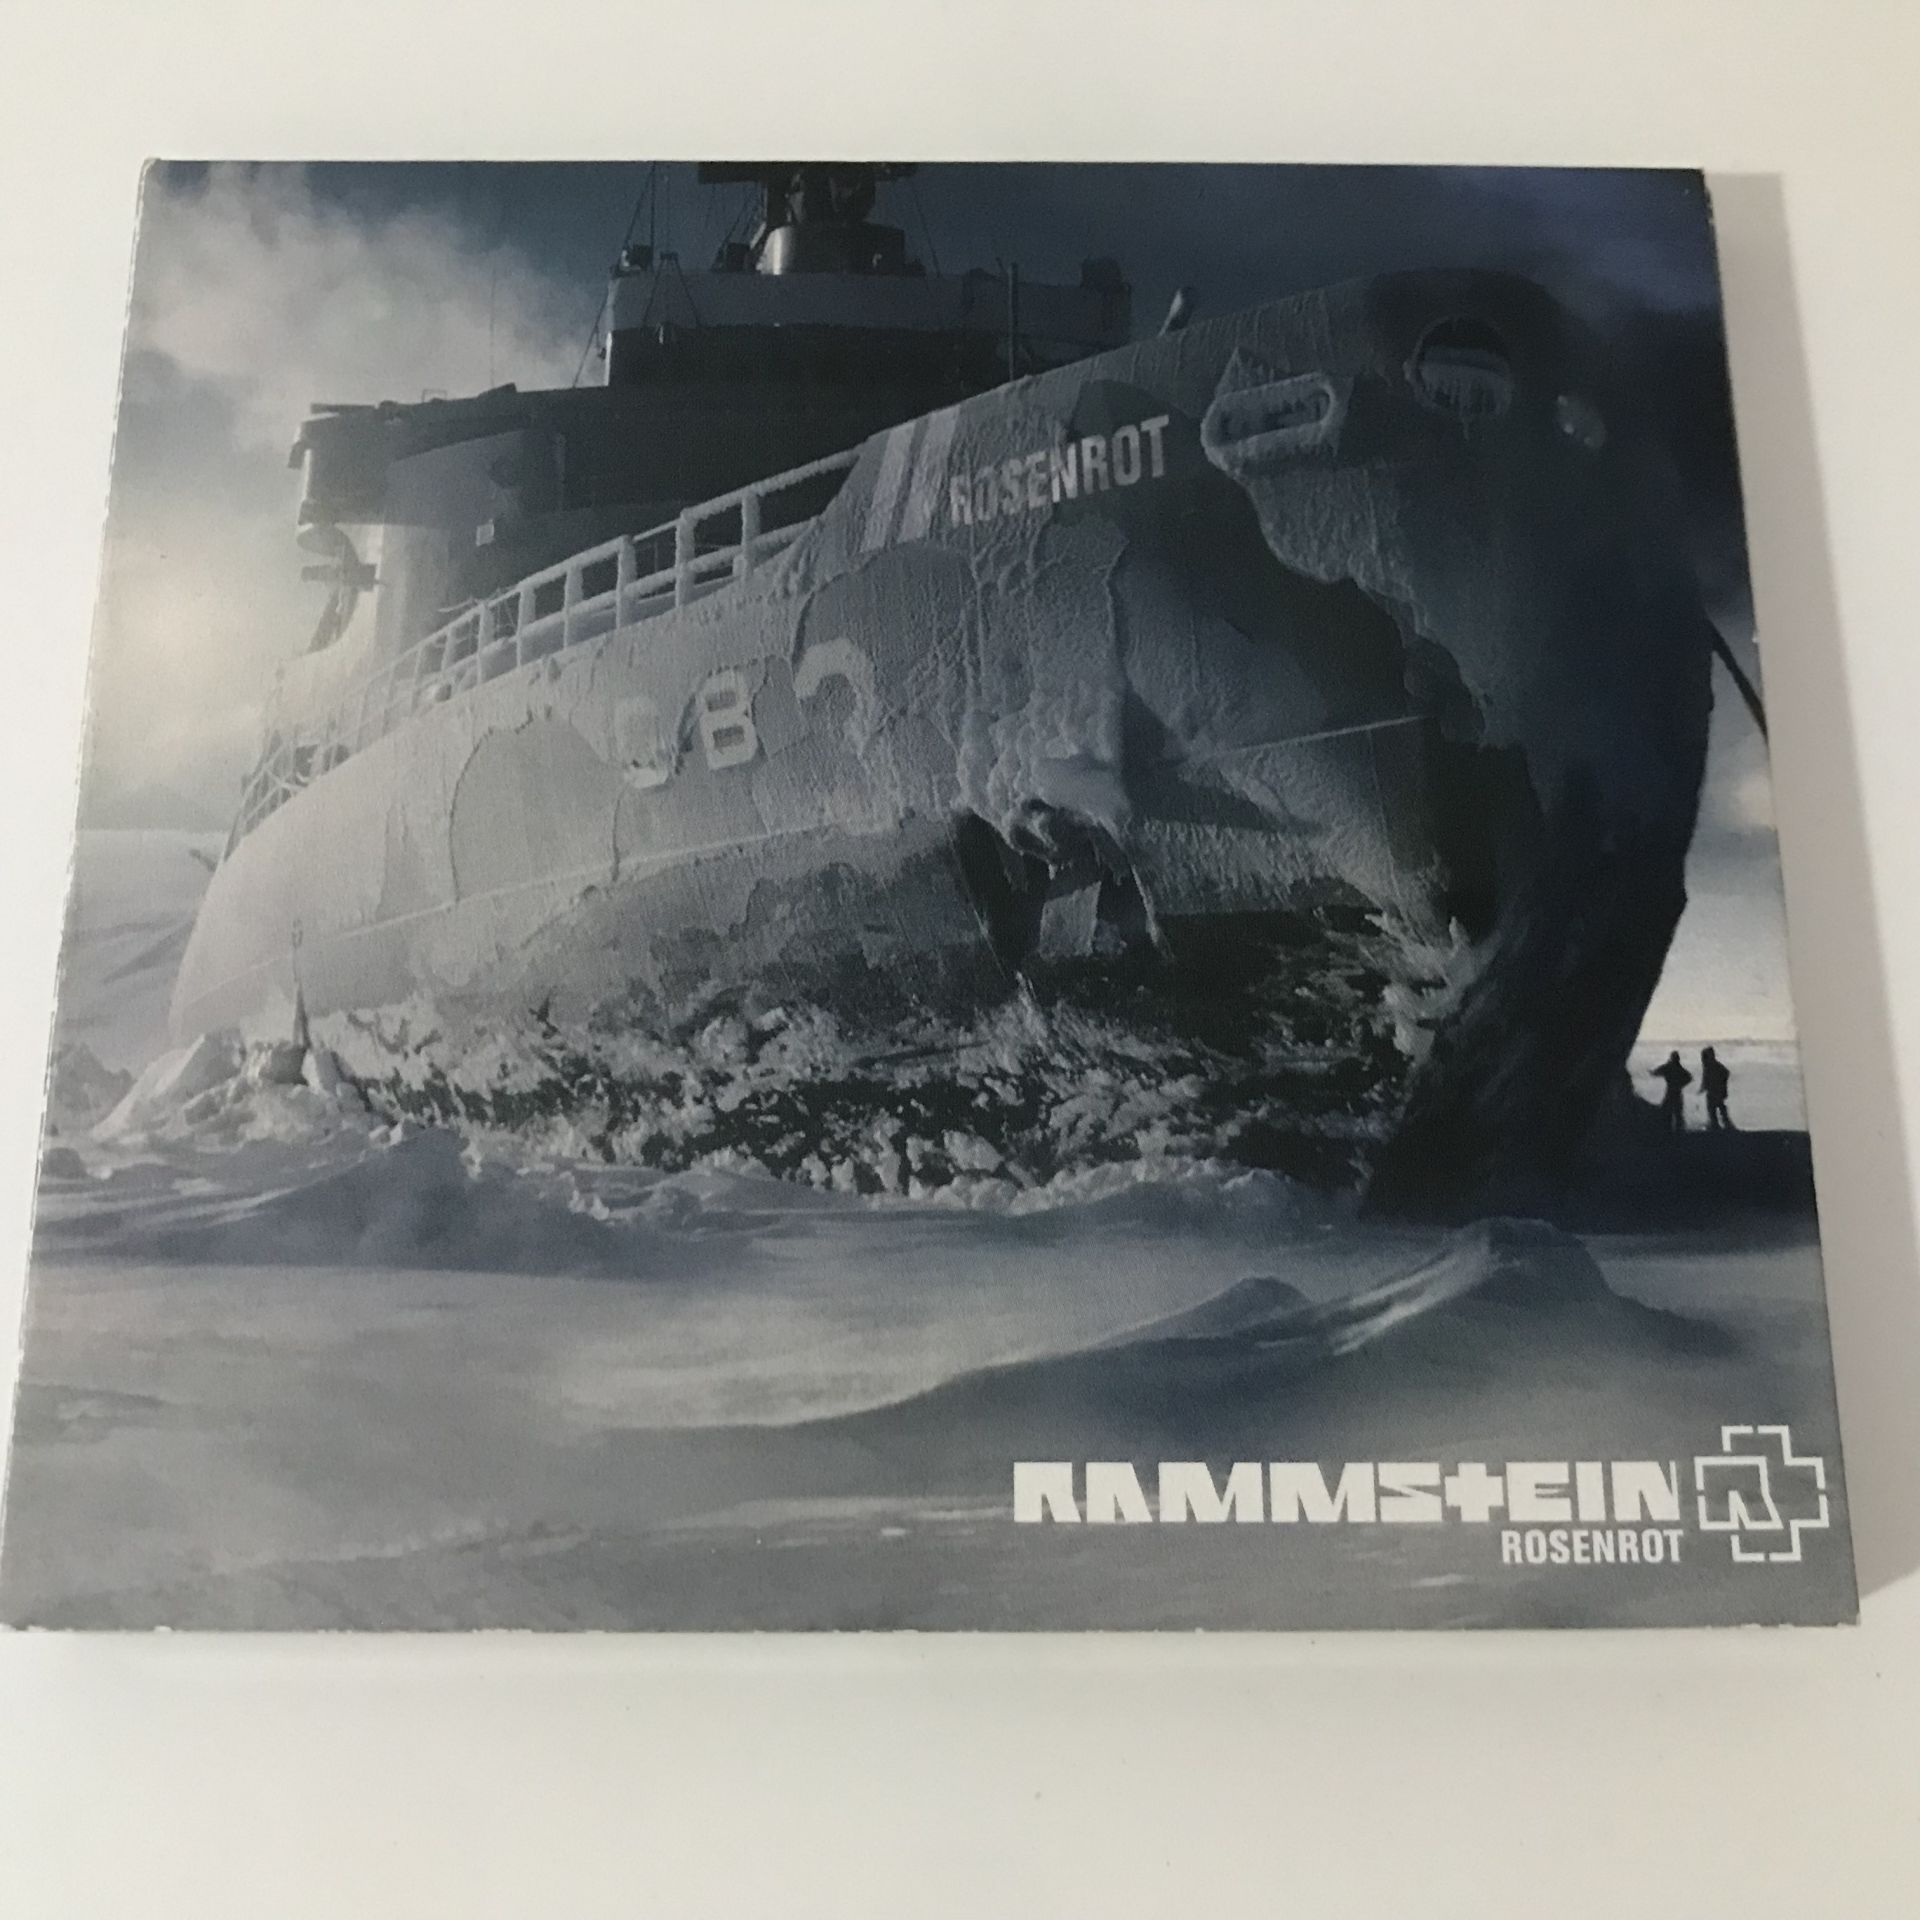 Rammstein – Rosenrot